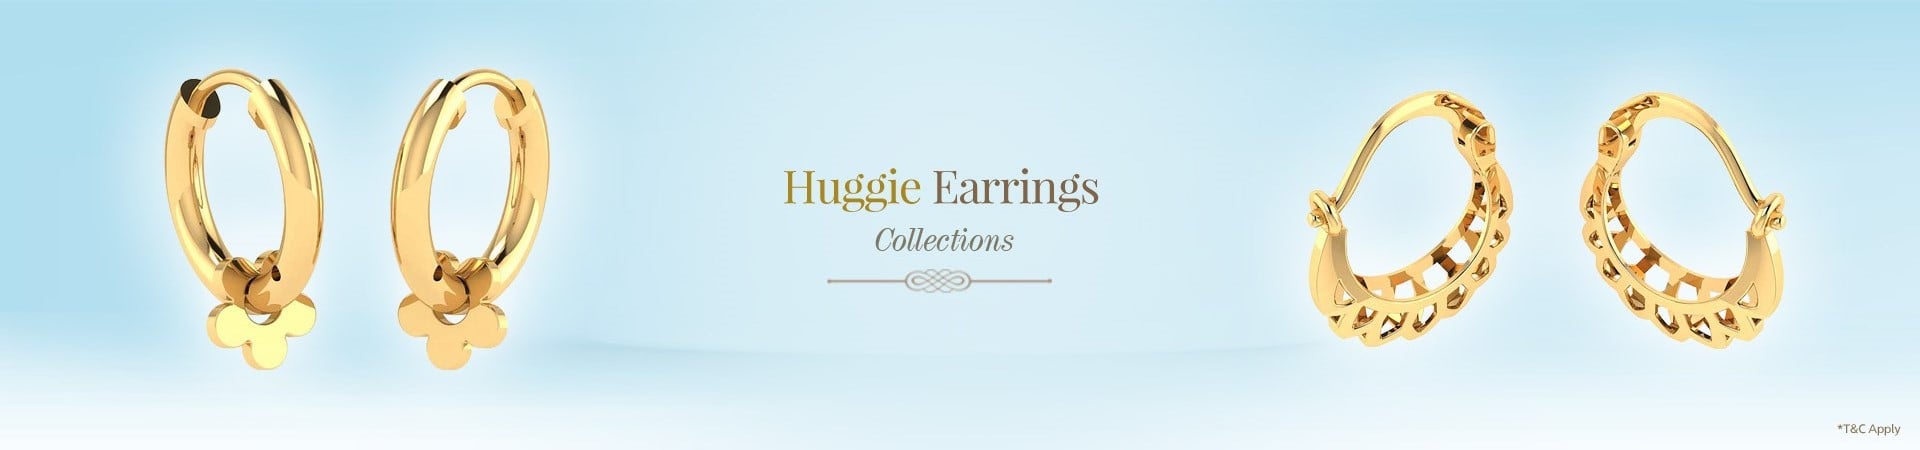 Gold Huggies Earrings Online